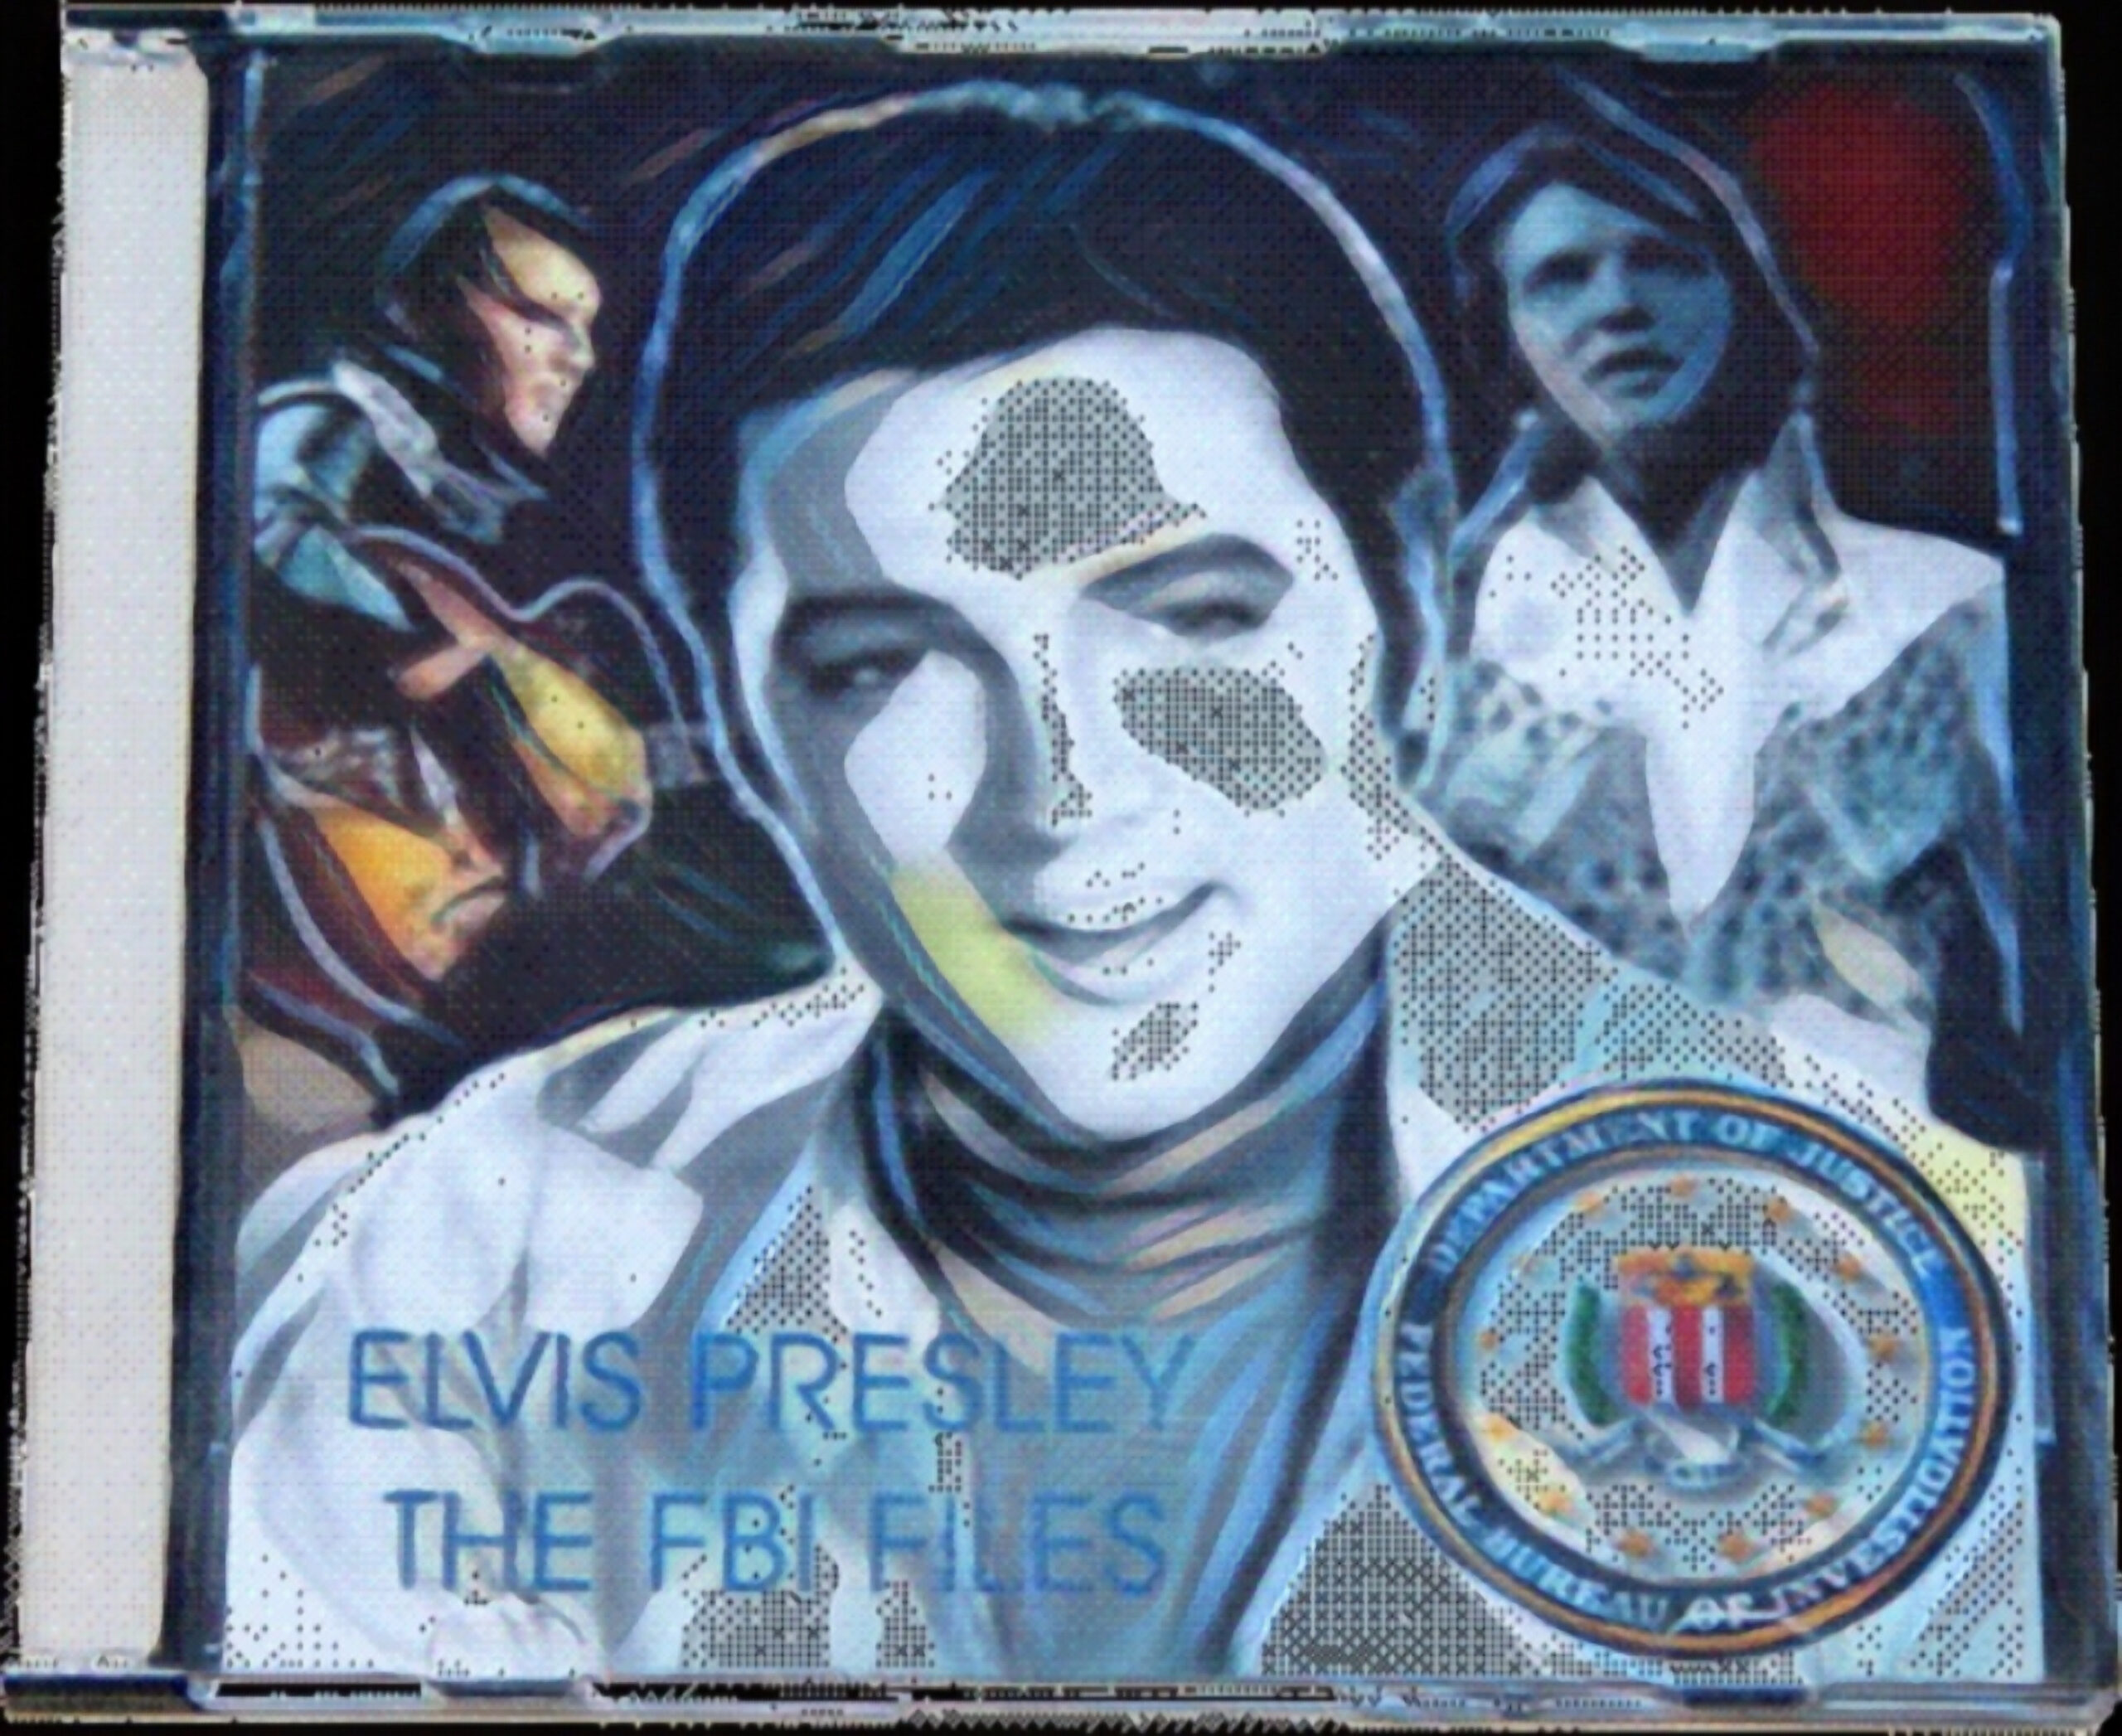 Elvis Presley: The FBI Files